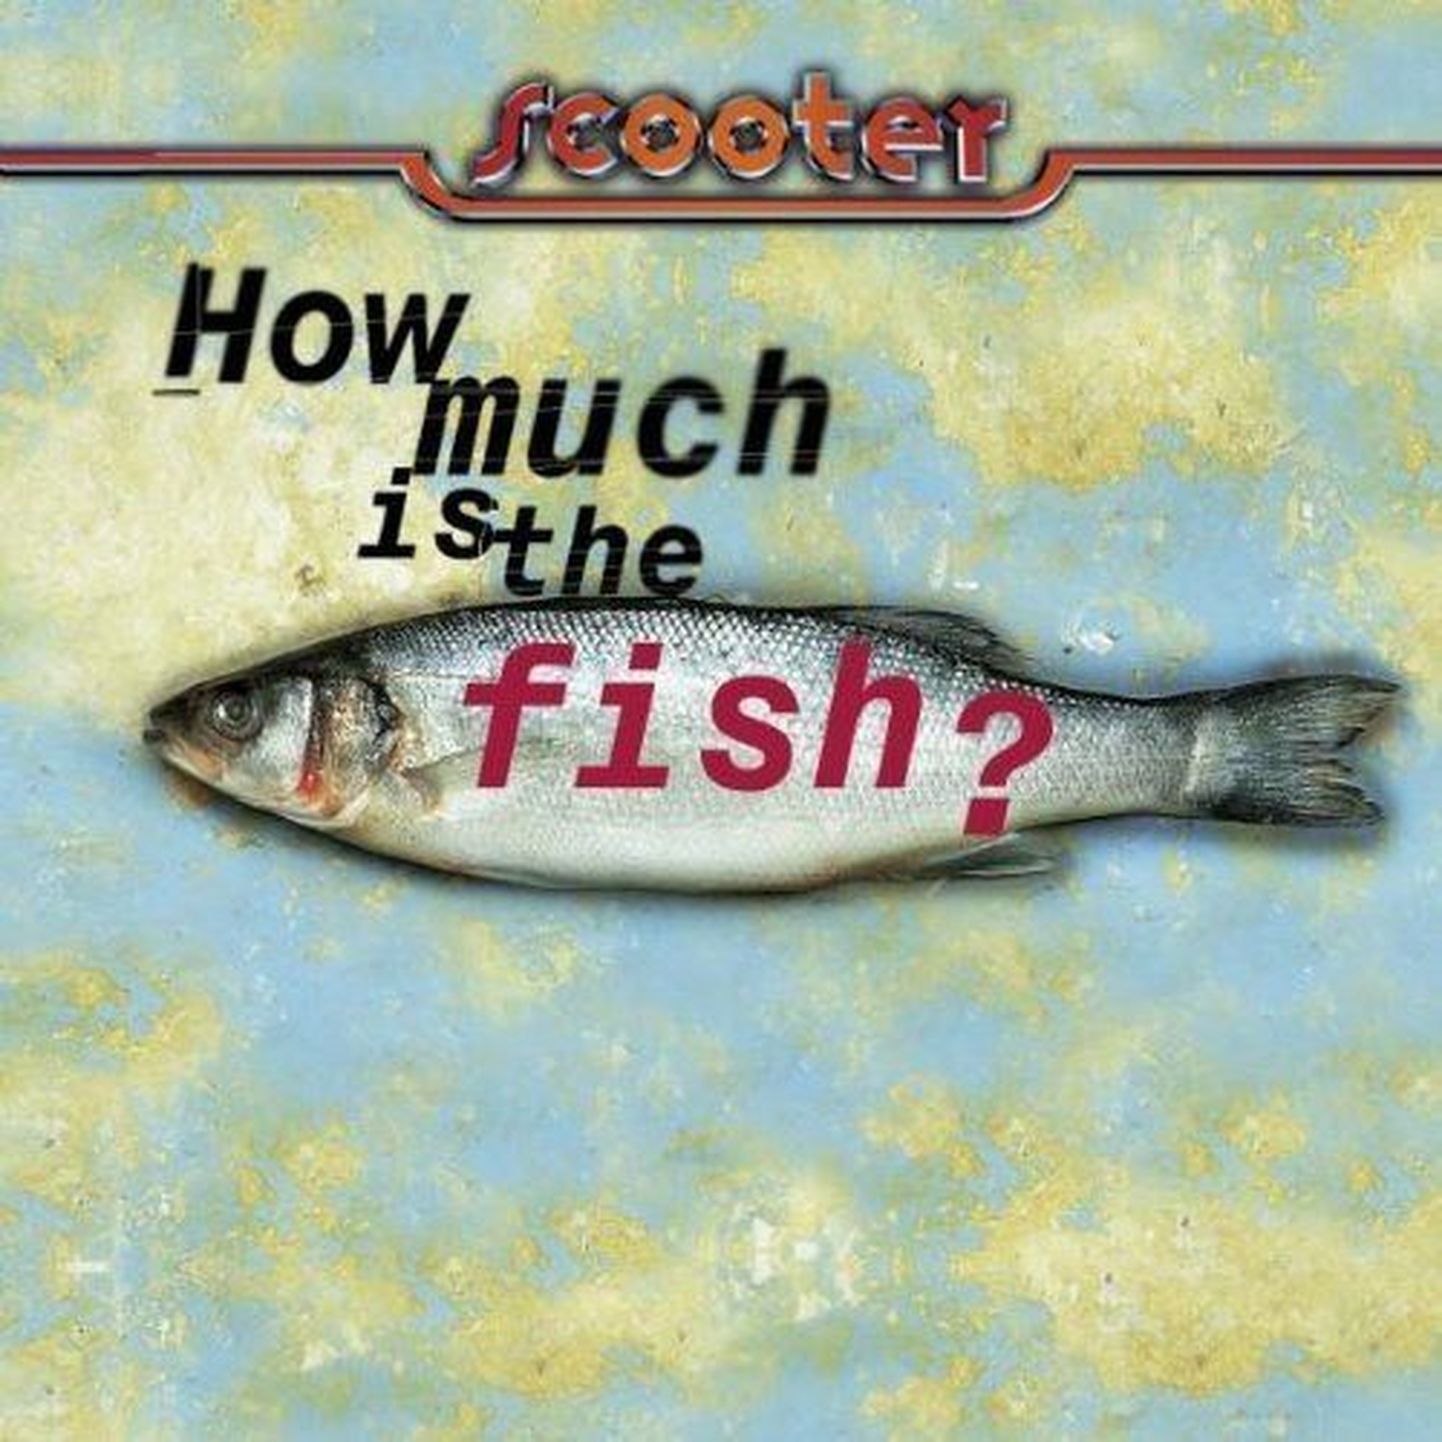 Palju kala maksab? USA telestaar Jimmy Fallon avastas Scooteri